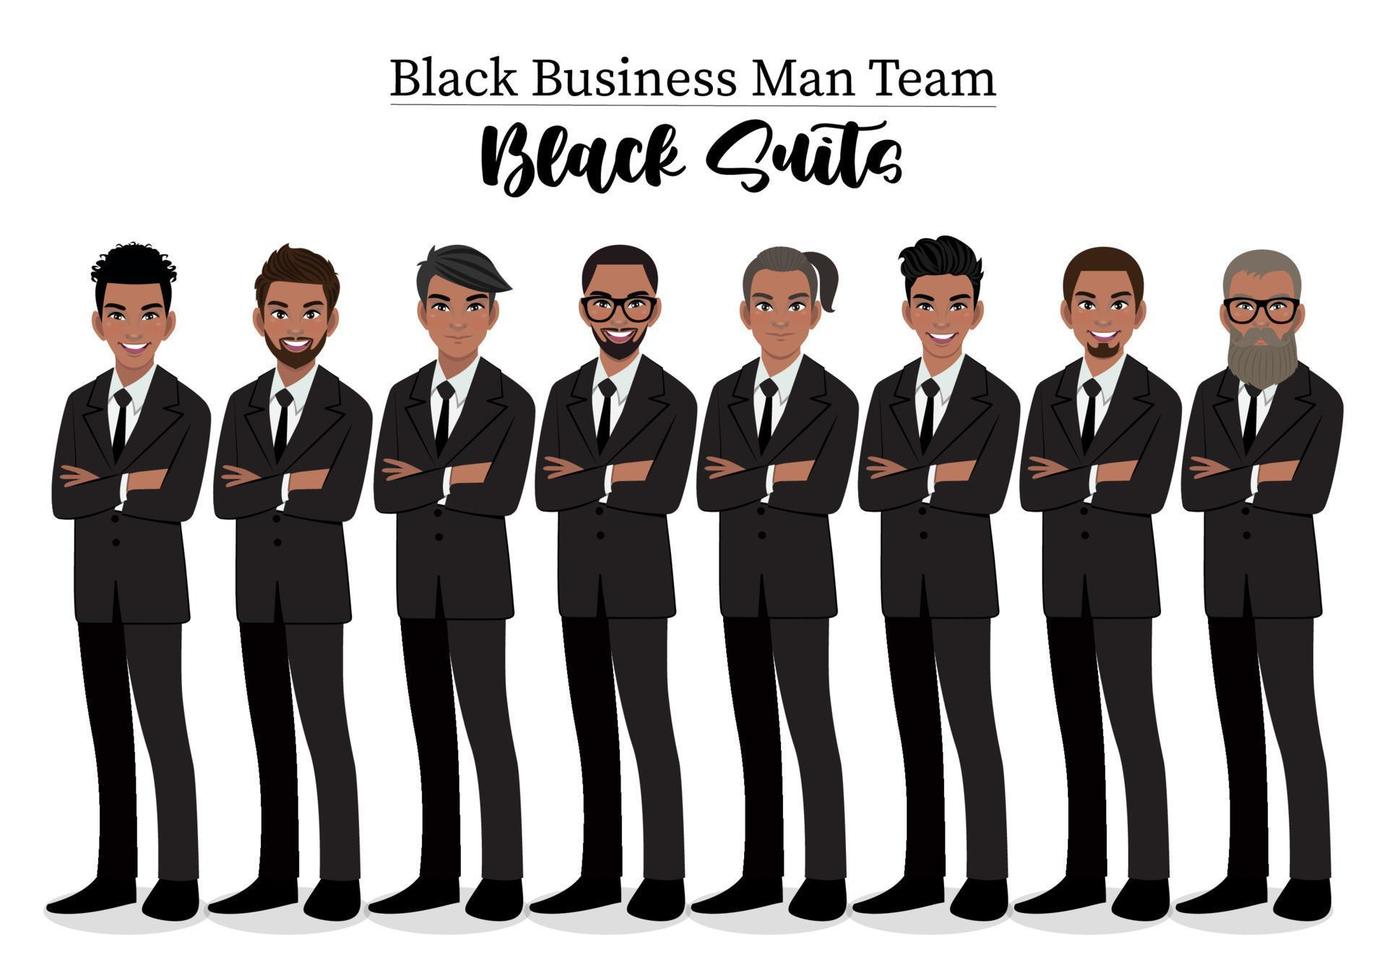 schwarzer Geschäftsmann oder amerikanisch-afrikanischer männlicher Charakter mit verschränkten Armen posieren in schwarzer Anzug-Vektor-Illustration. vektor